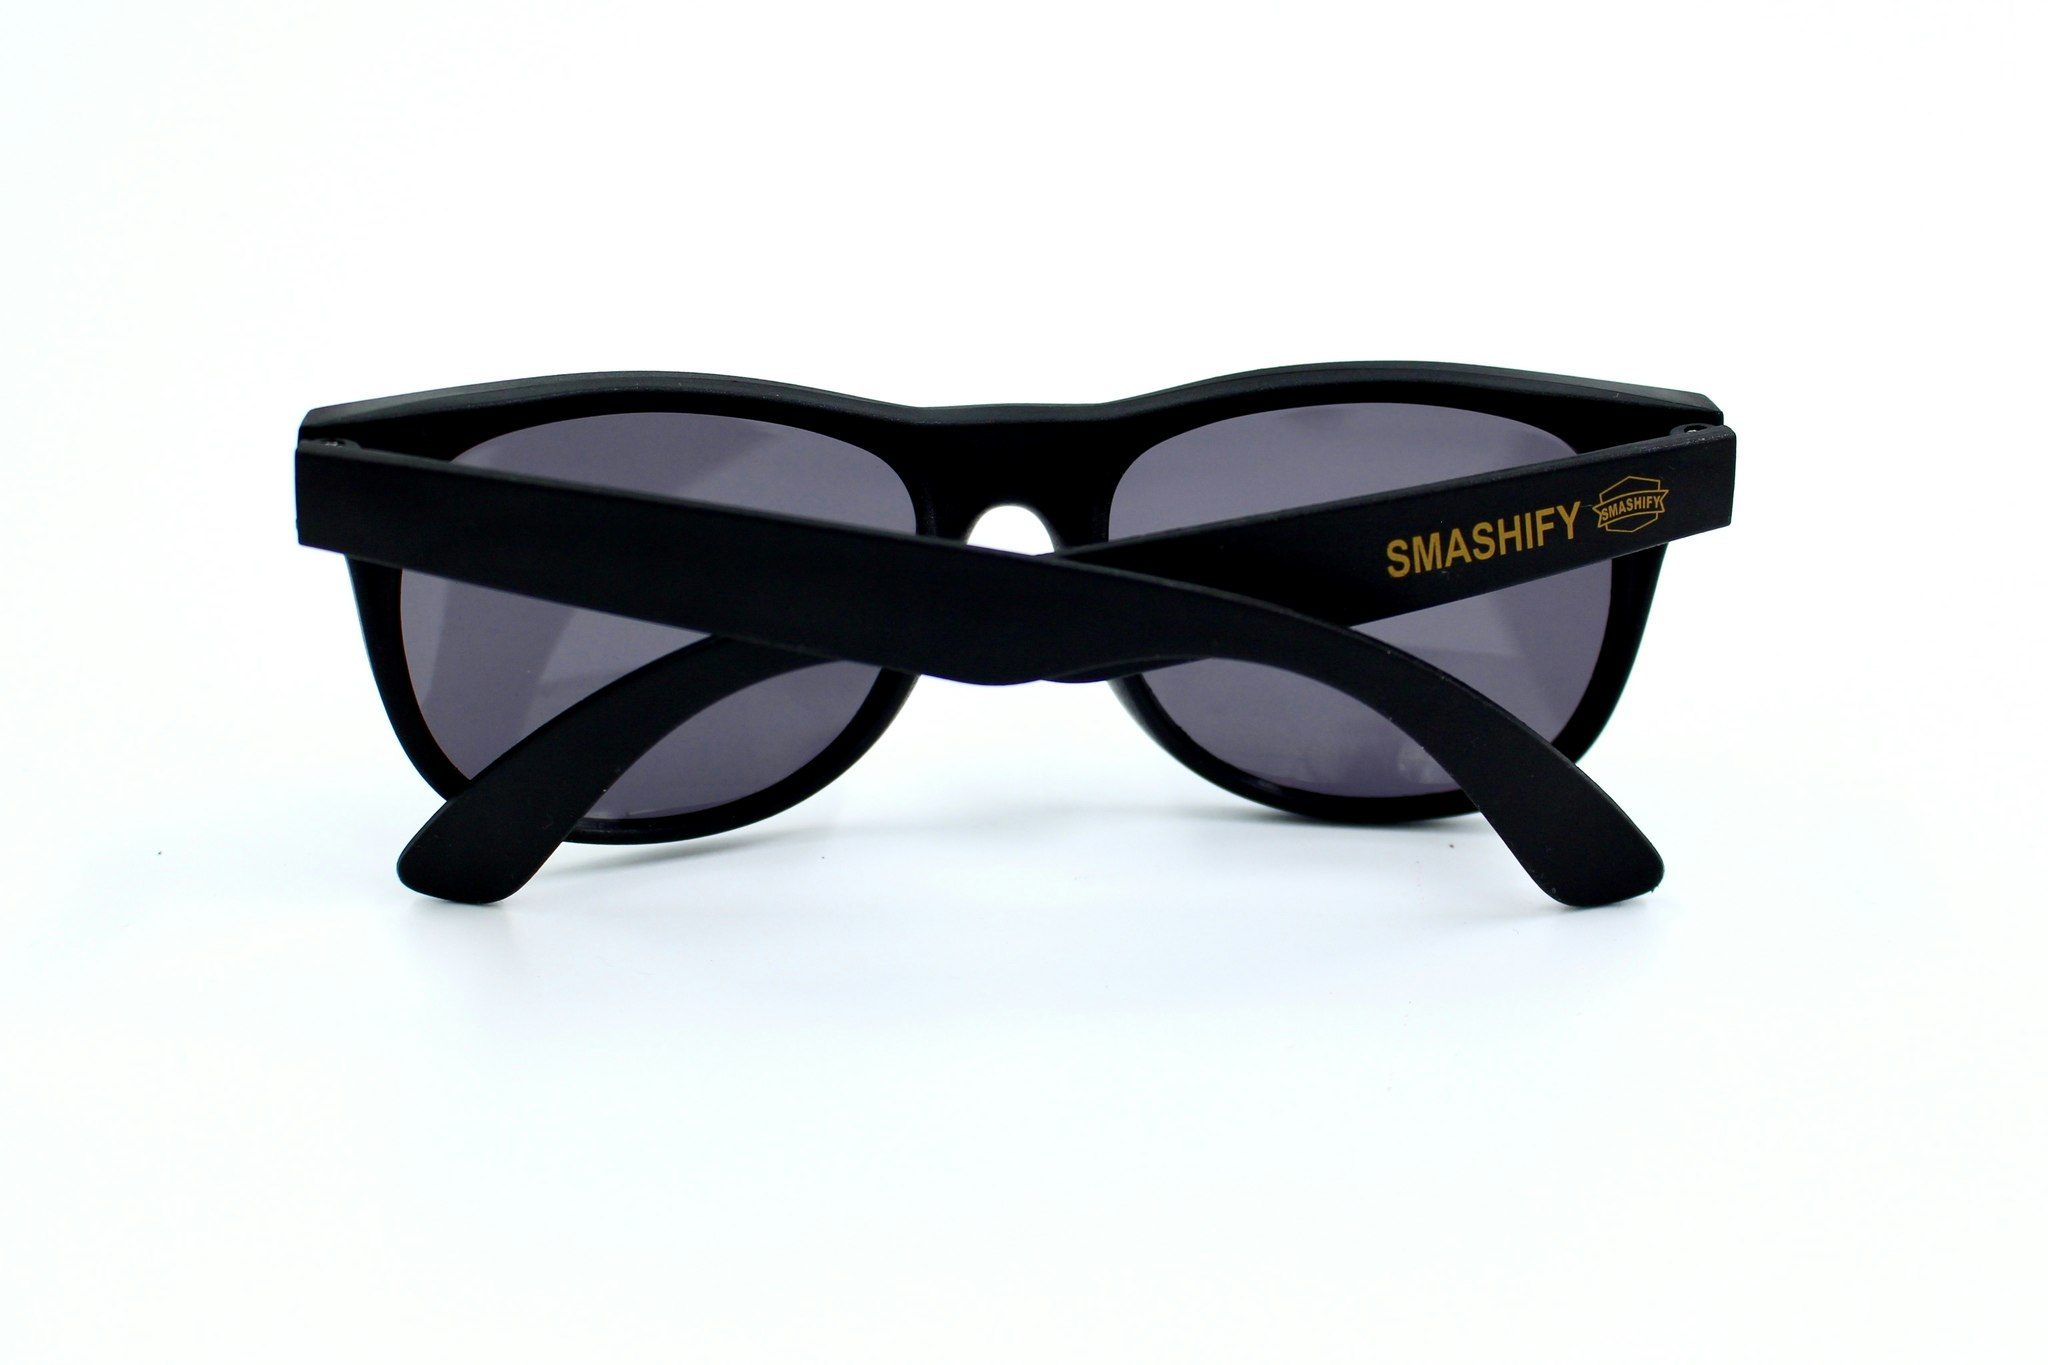 Svart solglasögon med Smashify logo. Stilfulla solglasögon i klassisk modell